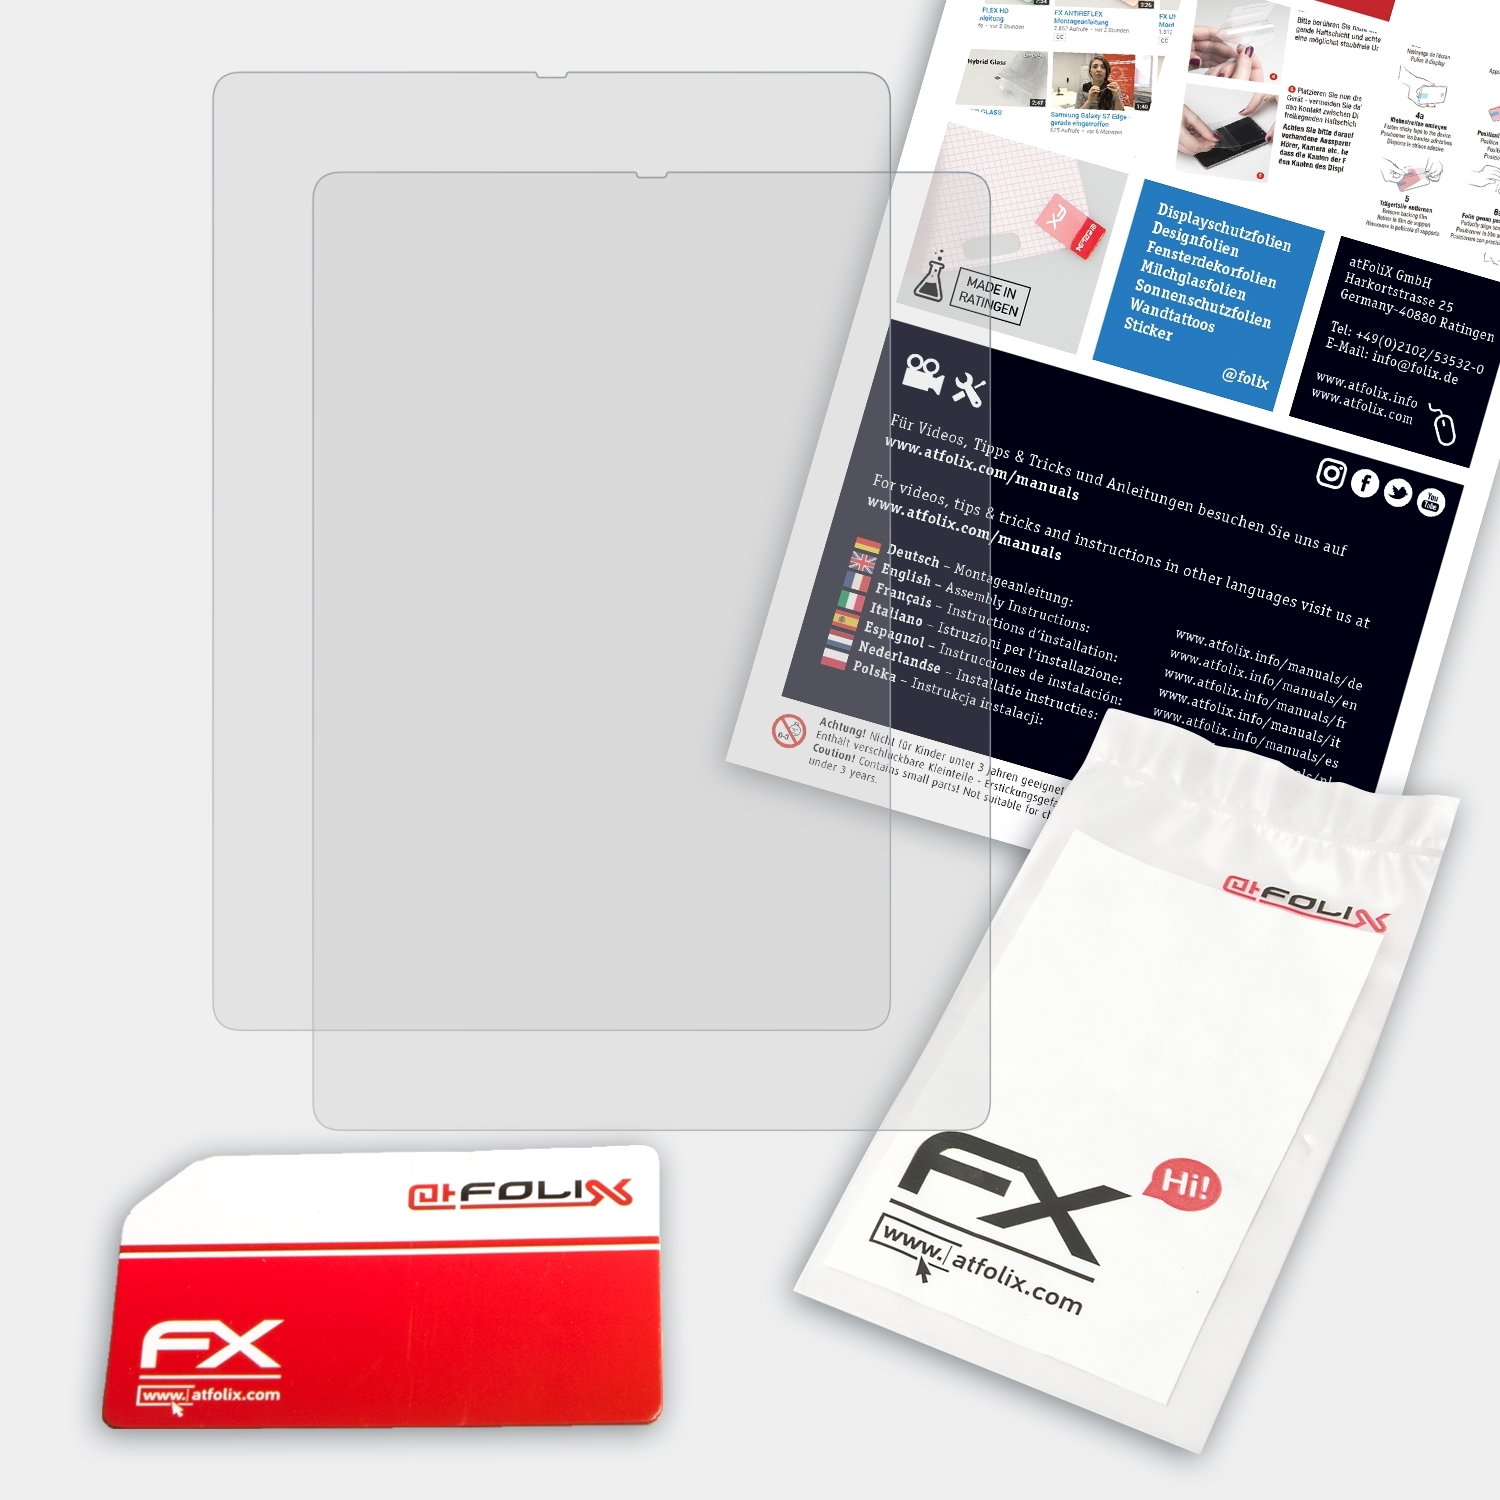 Kindle 2x (11 Paperwhite Displayschutz(für Signature Edition Gen. ATFOLIX Amazon FX-Antireflex 2021))